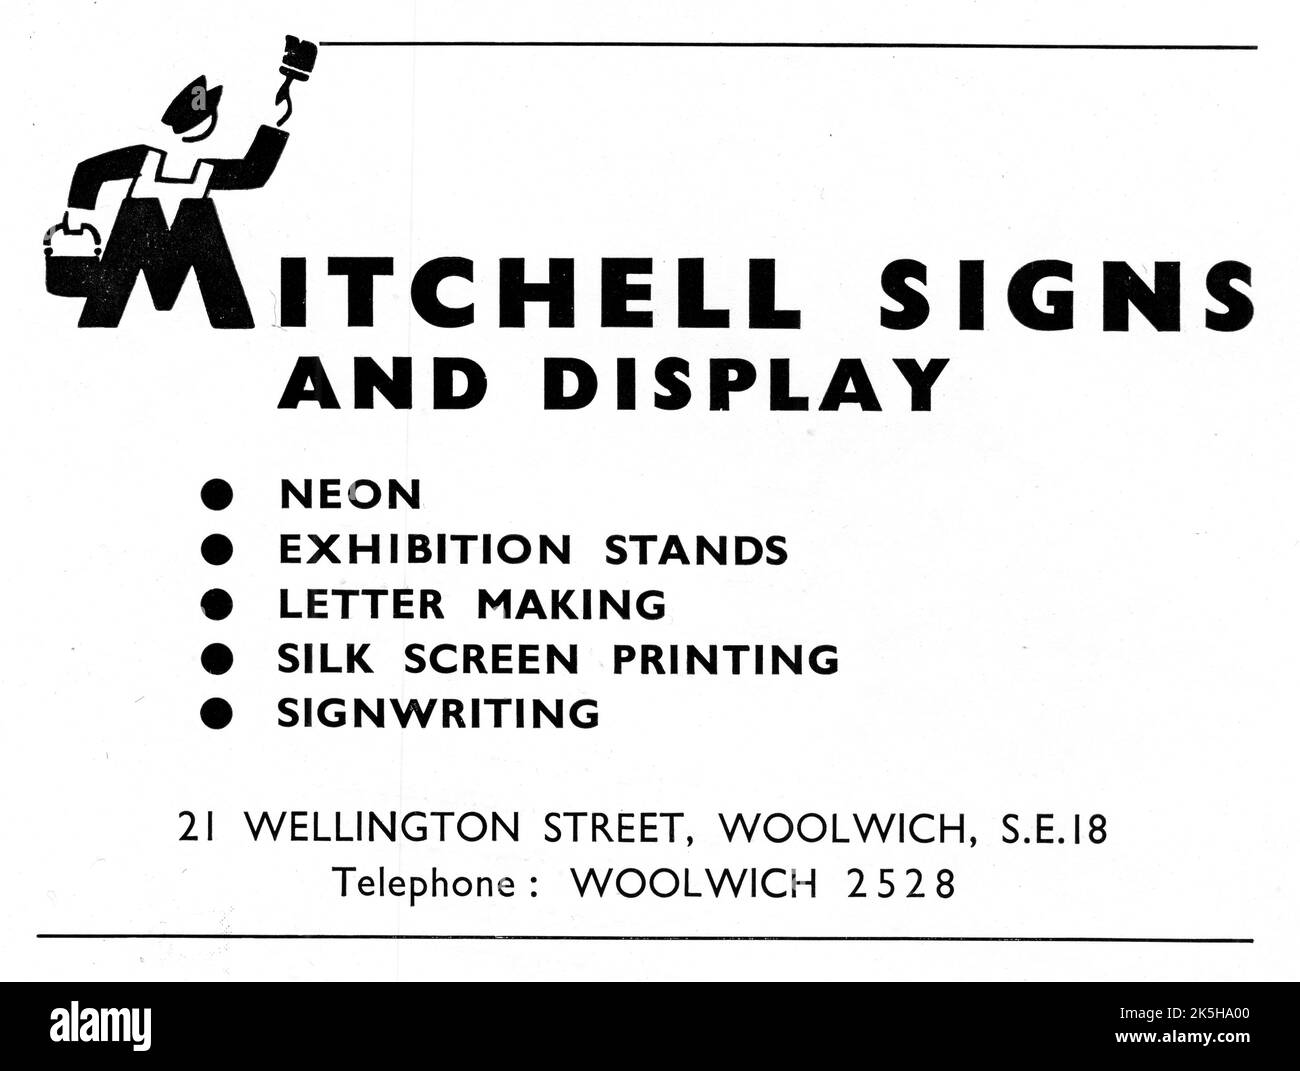 Eine 1951-Anzeige für ‘Mitchell Signs and Display’ der 21 Wellington Street, Woolwich, London S.E.18. Das Unternehmen hat sich auf Neonschilder, Messestände, Briefherstellung, Siebdruck und Signwriting spezialisiert. Stockfoto